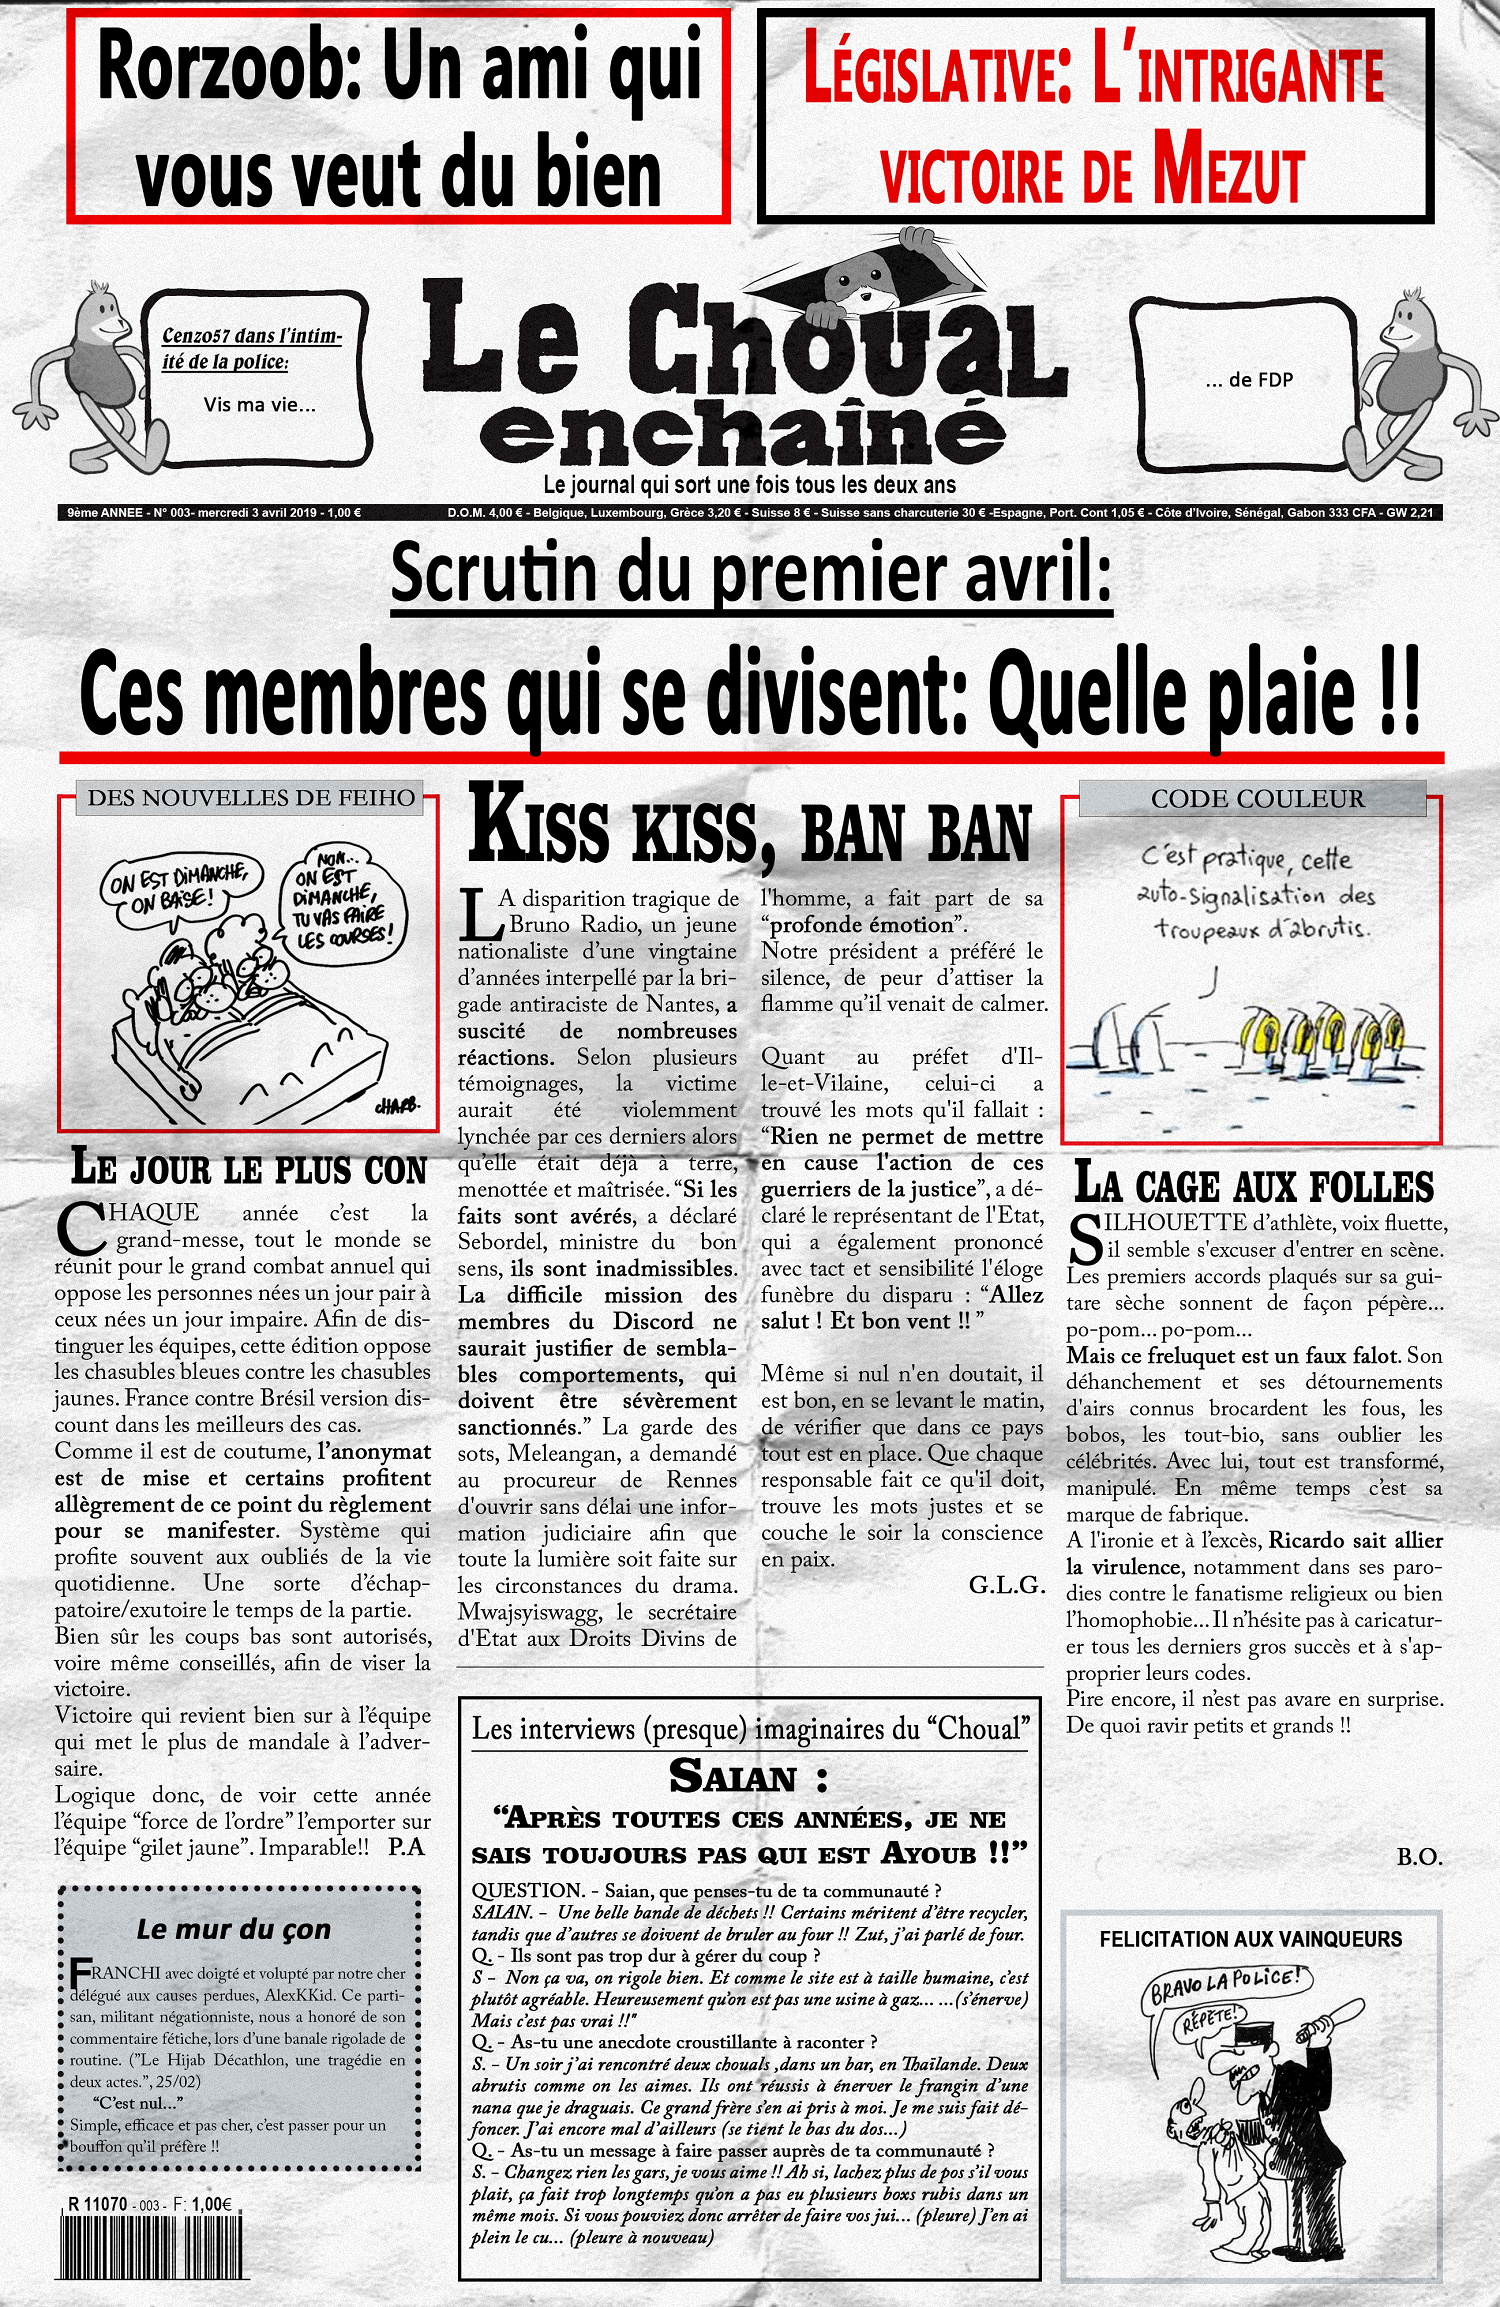 Le Choual Enchainé #3